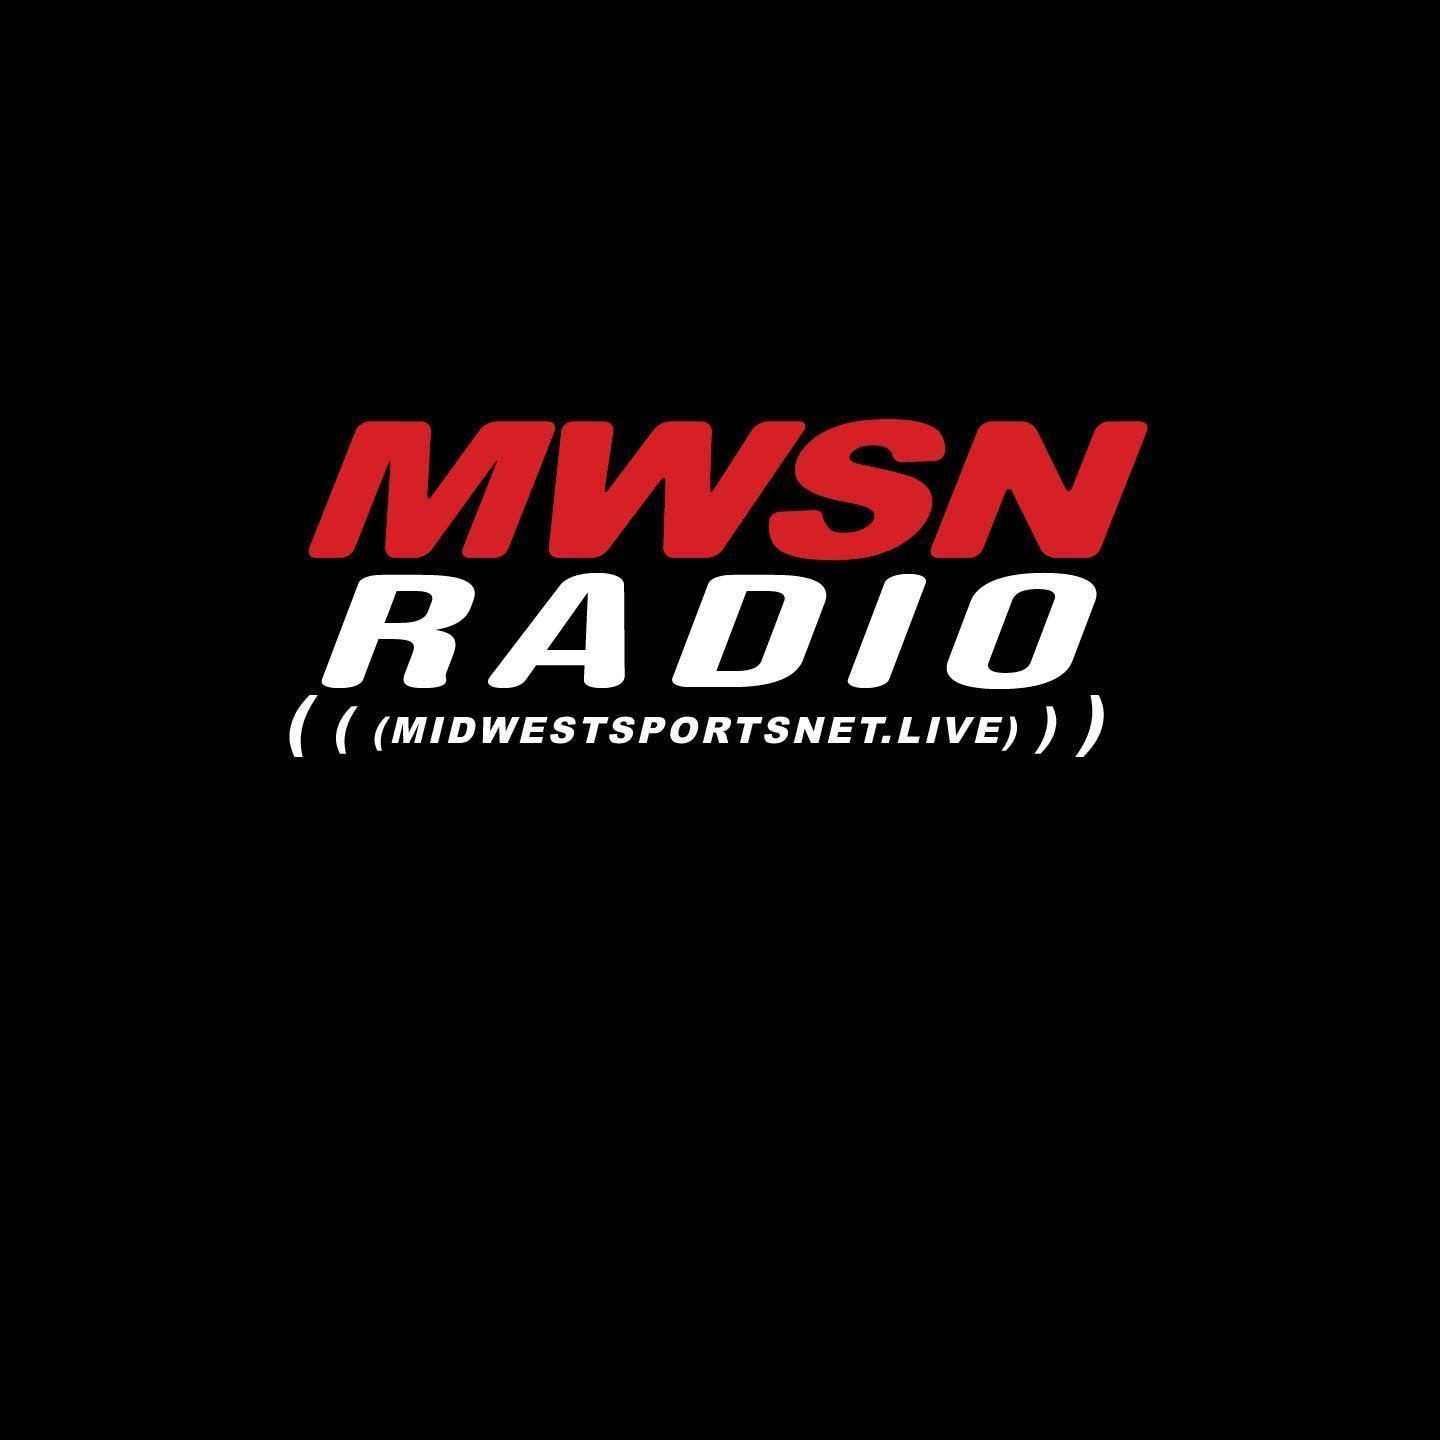 Profilo MWSN Radio Canal Tv